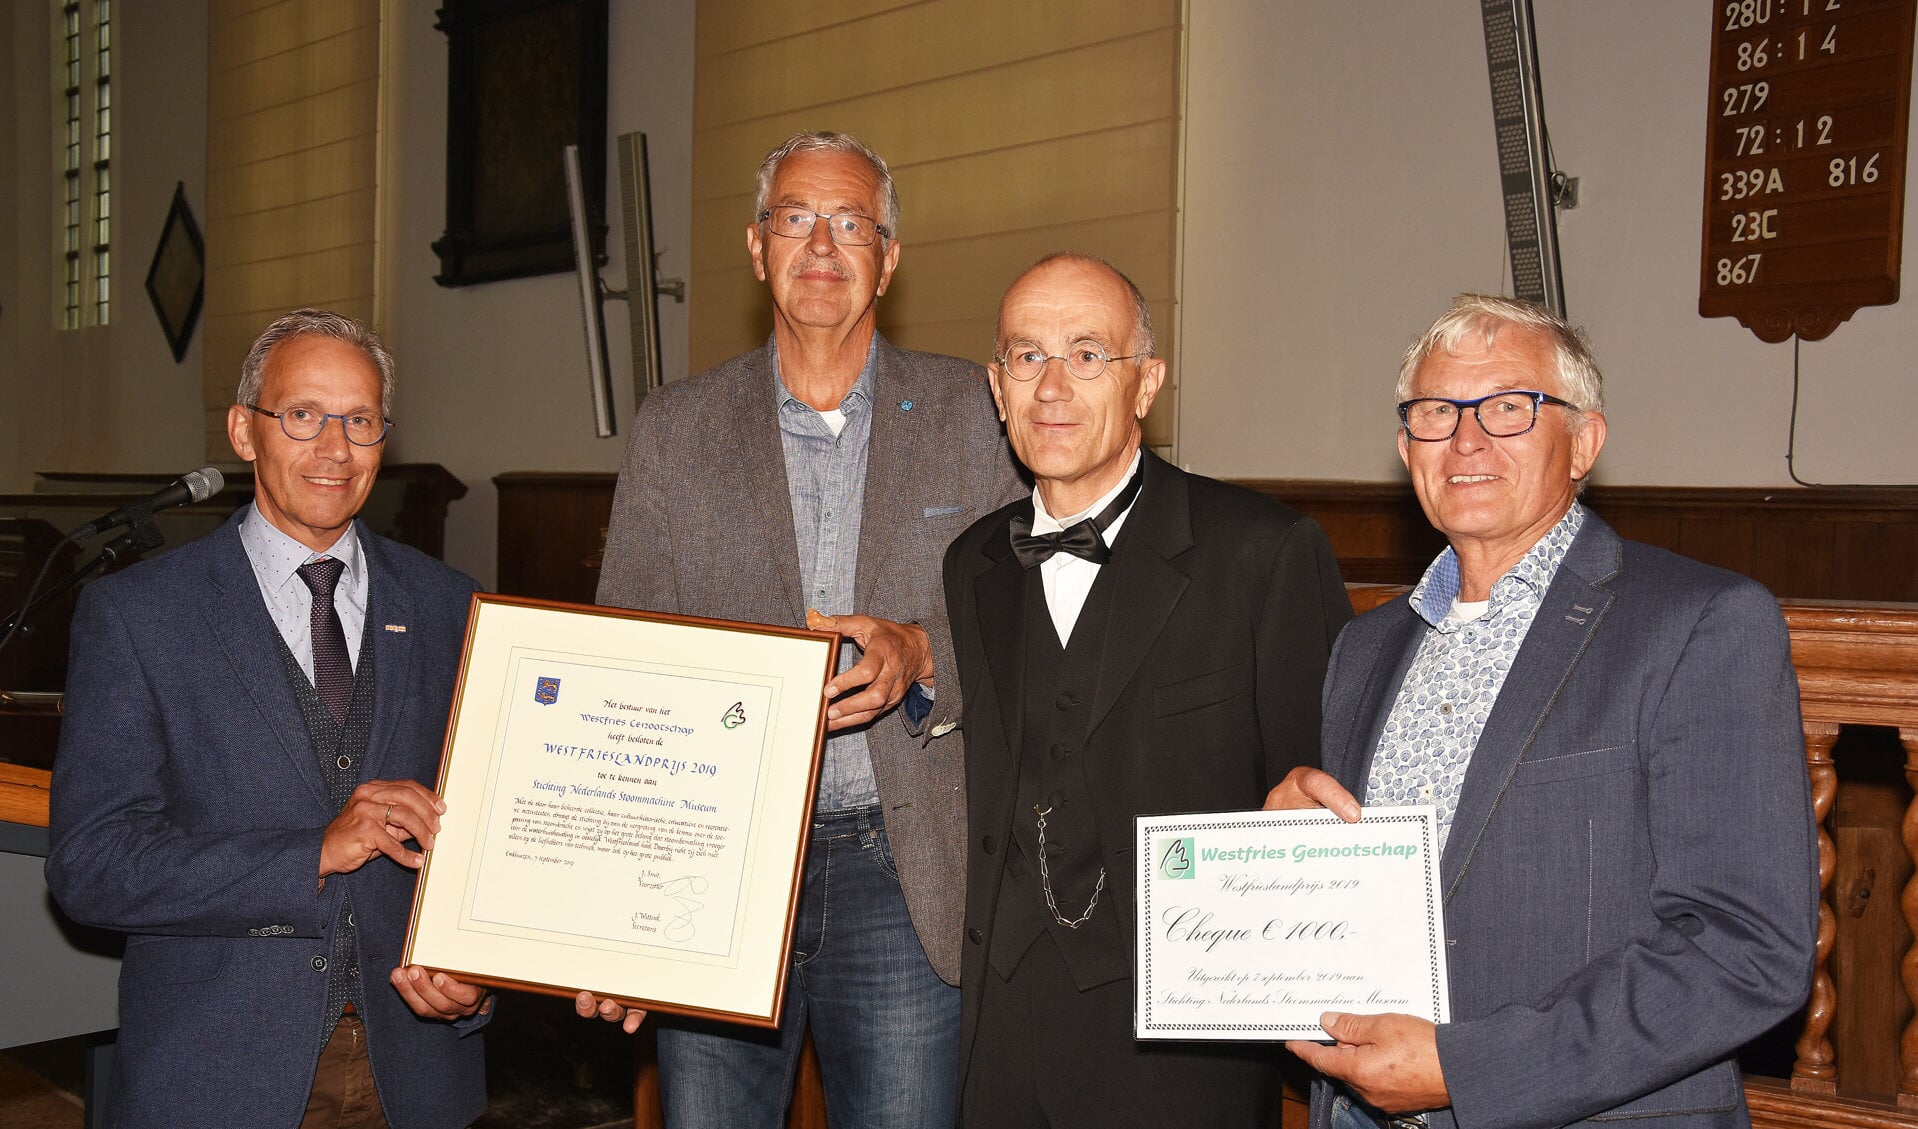 V.l.n.r.: Harry de Bles, Johan Bommerson en Kees Kruyer van het Stoommachinemuseum en Jan Smit (2e.v.r.), voorzitter van het Westfries Genootschap.